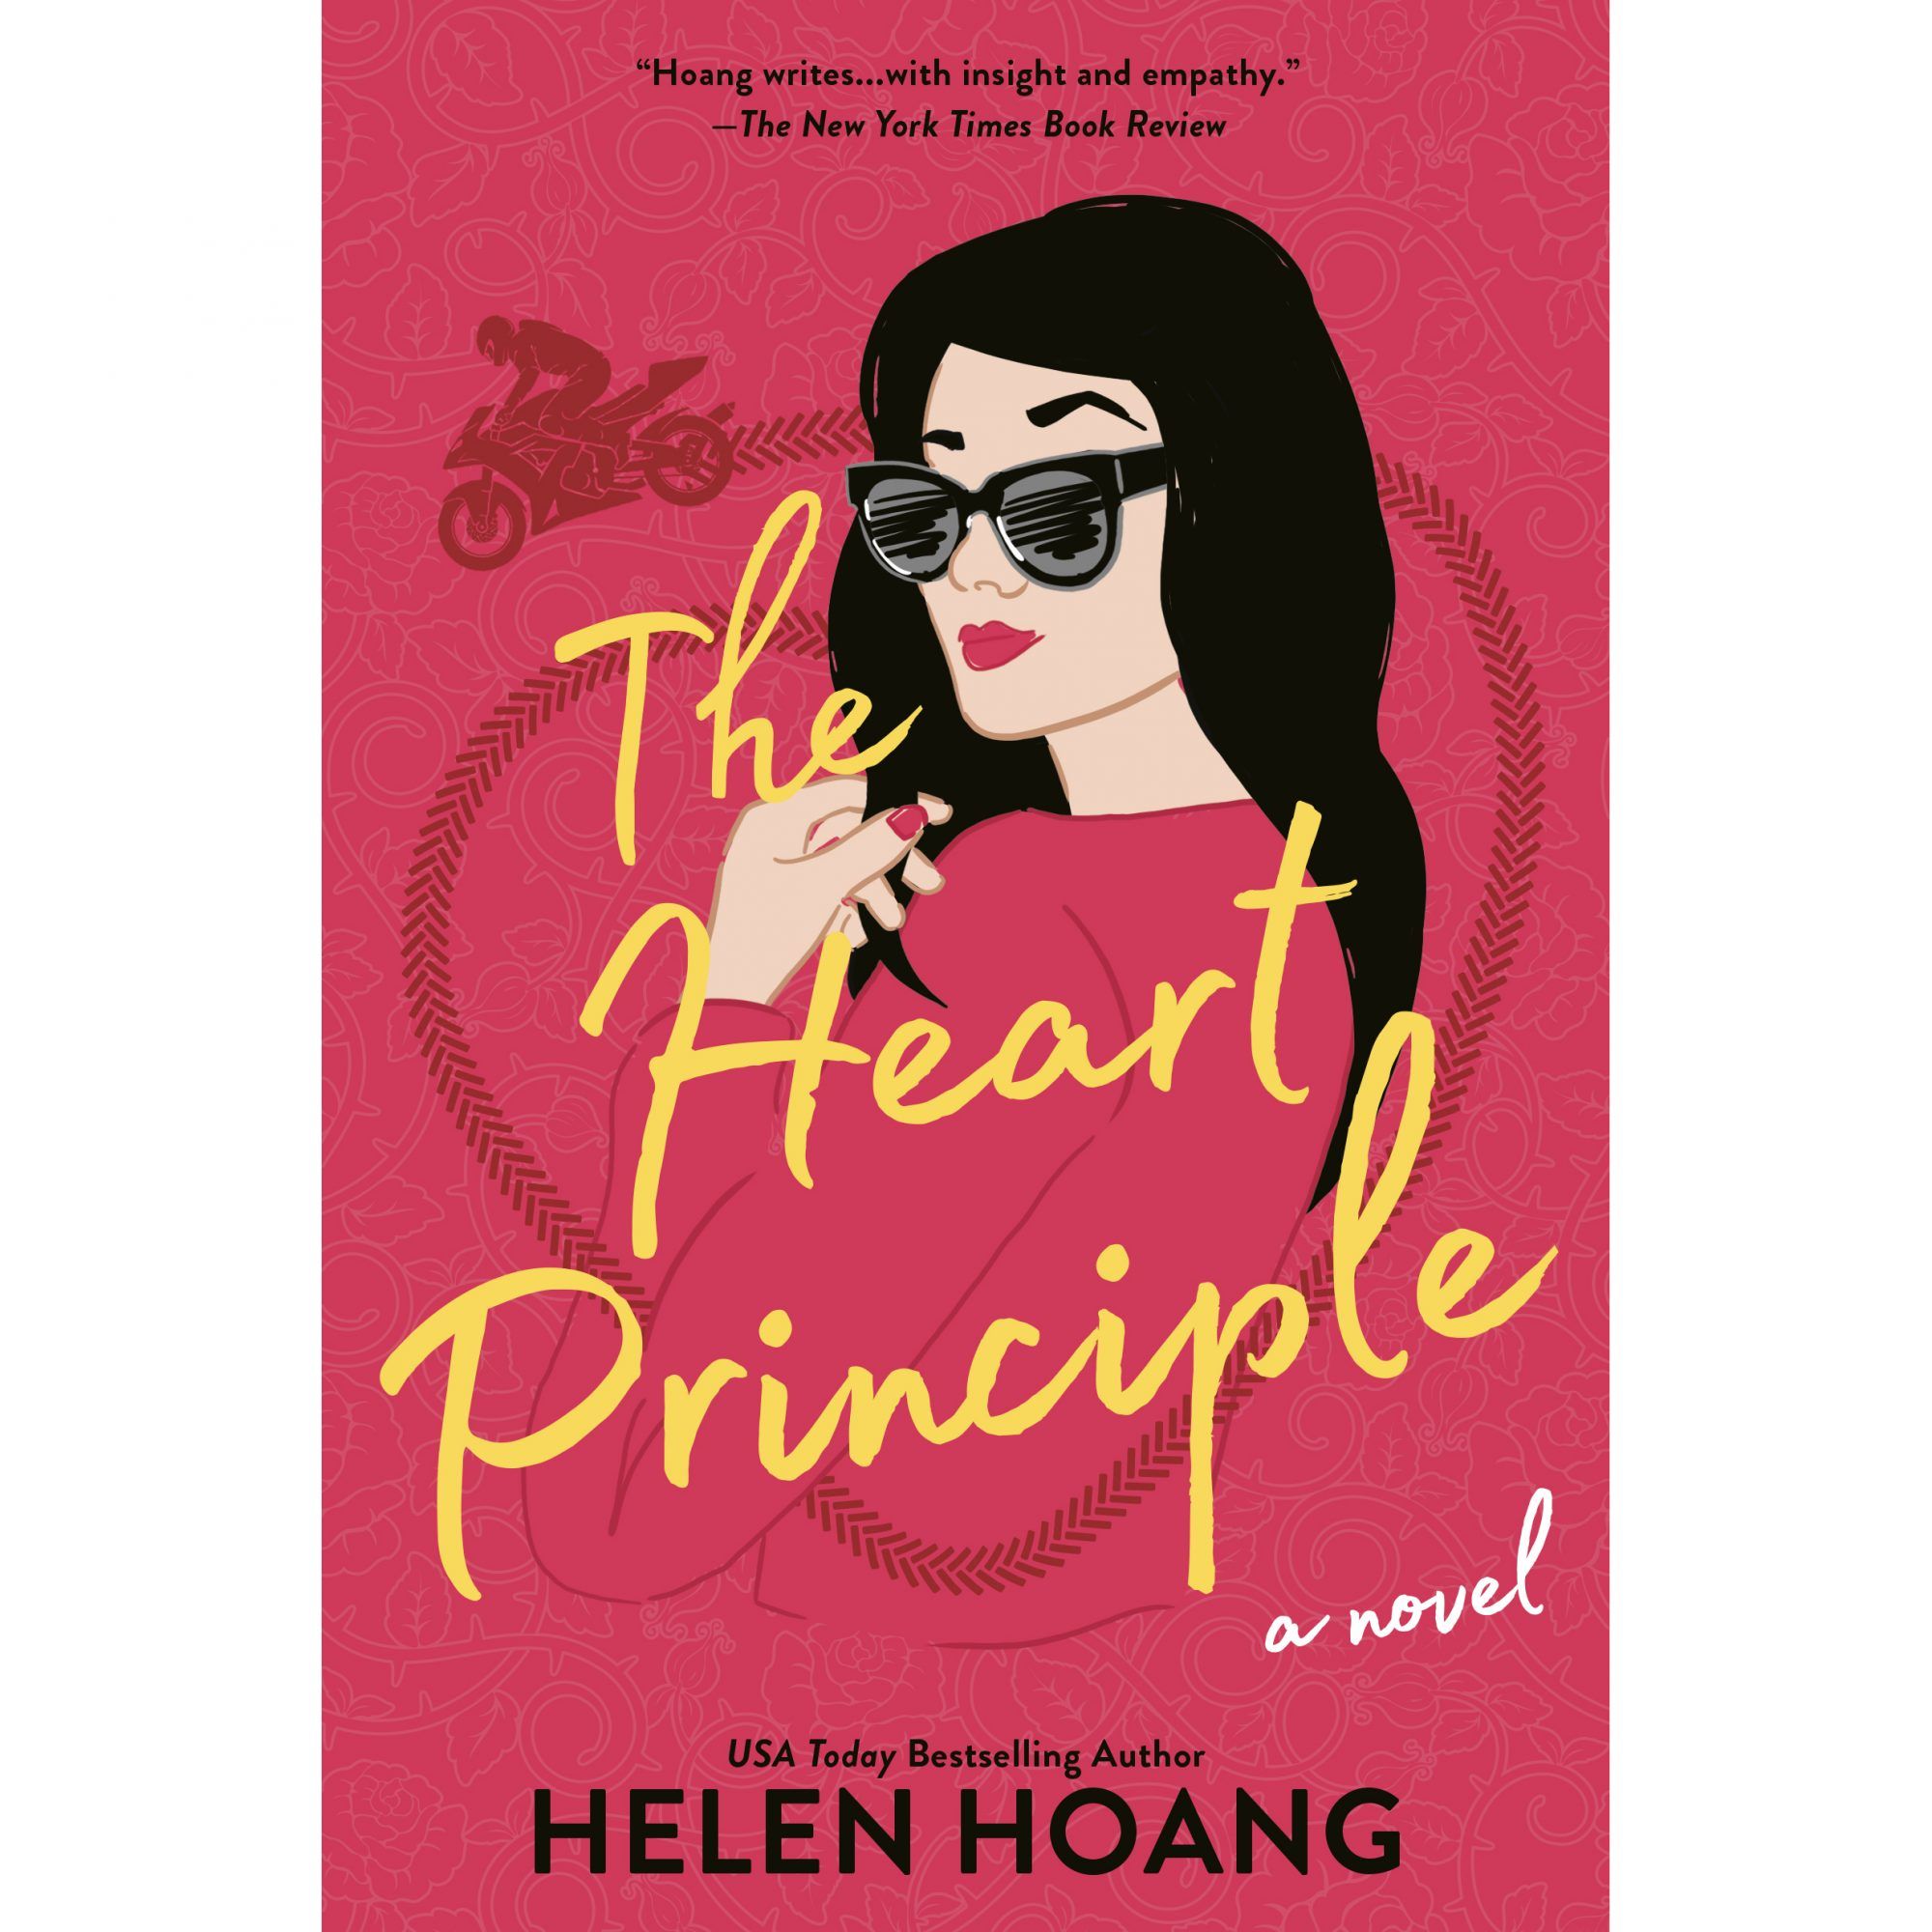 O Princípio do Coração de HELEN HOANG